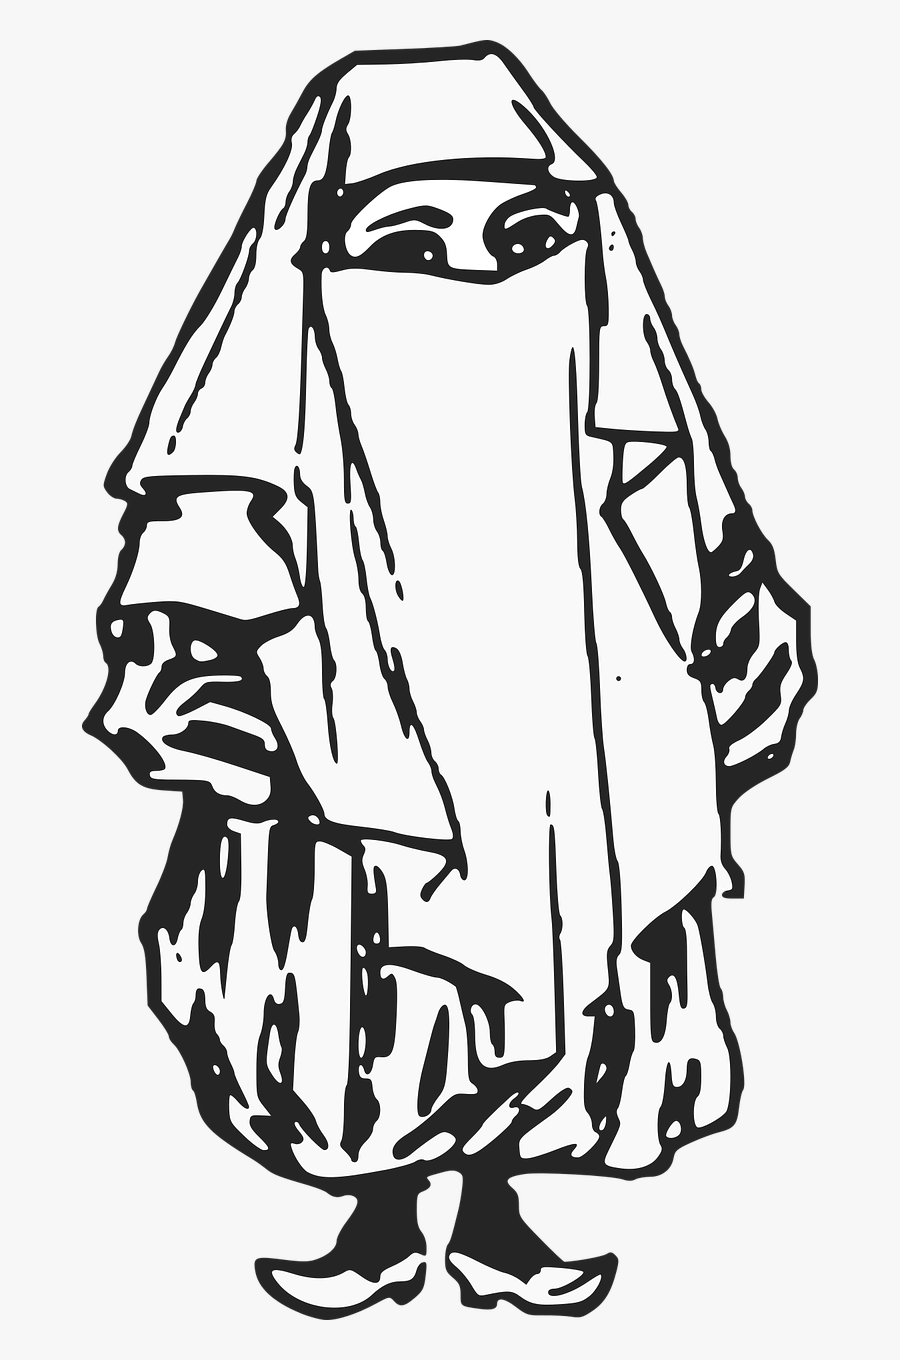 Ethnic Veil Woman Free Picture - Veil Clip Art Black White, Transparent Clipart